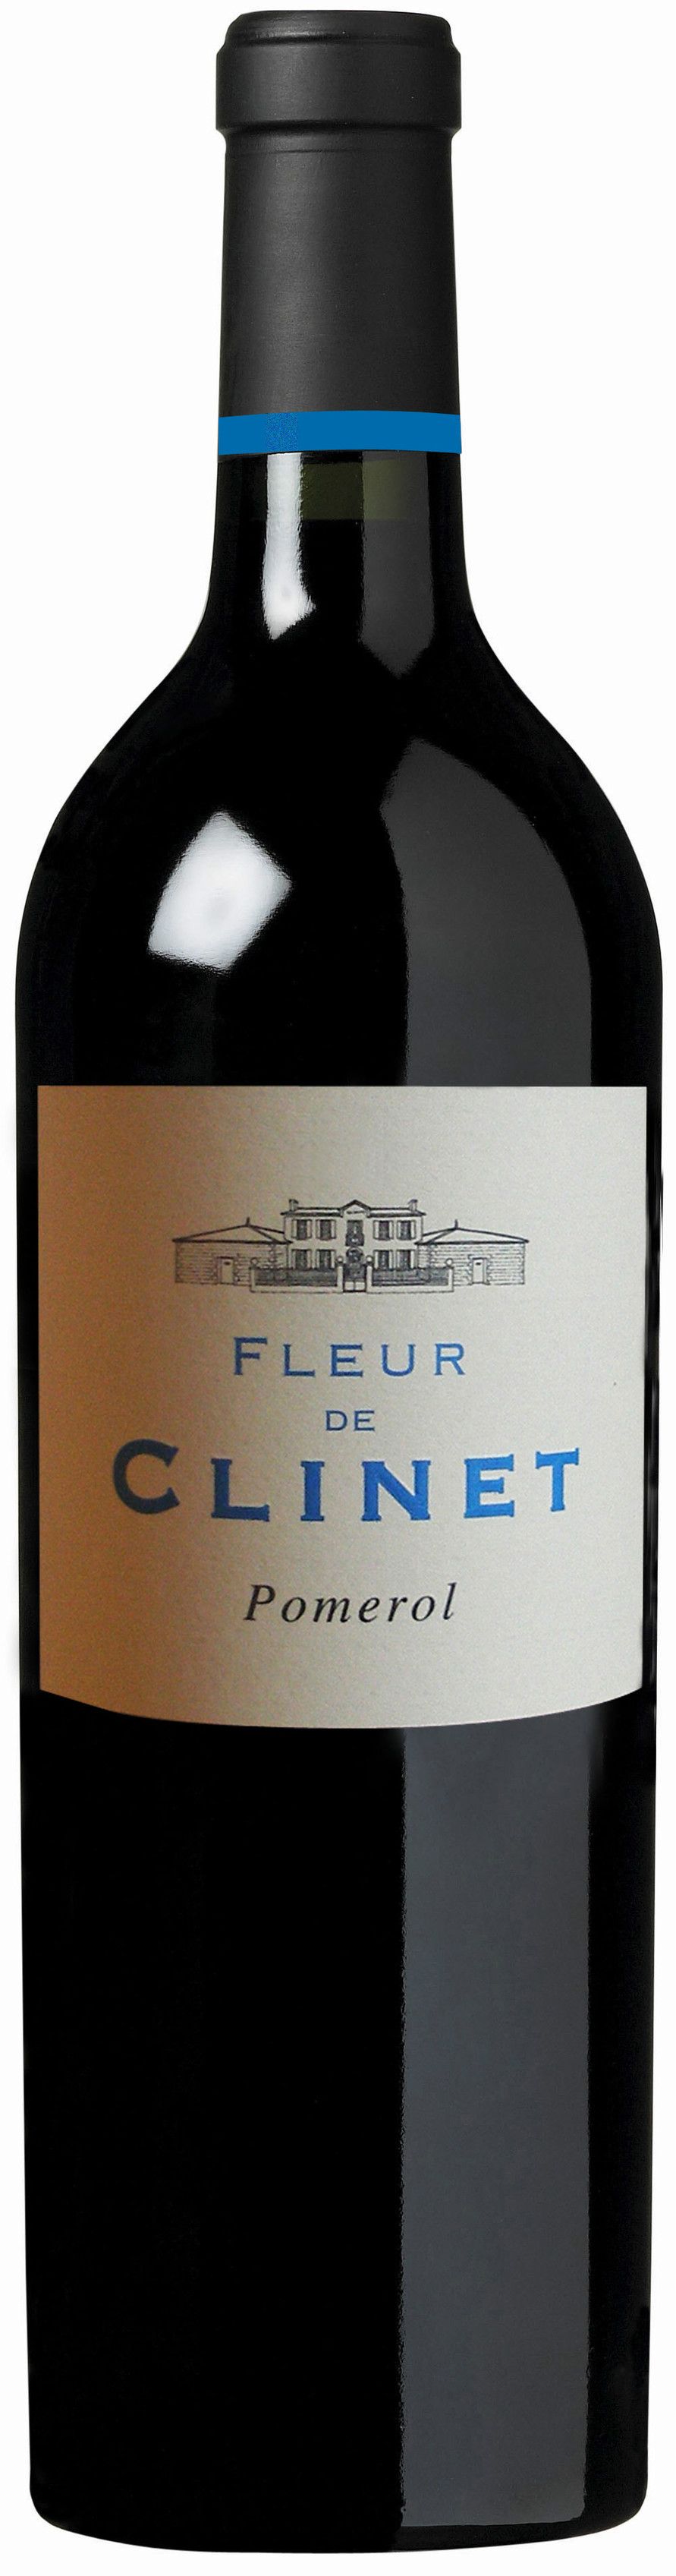 Chateau Clinet, Fleur De Clinet, 2013